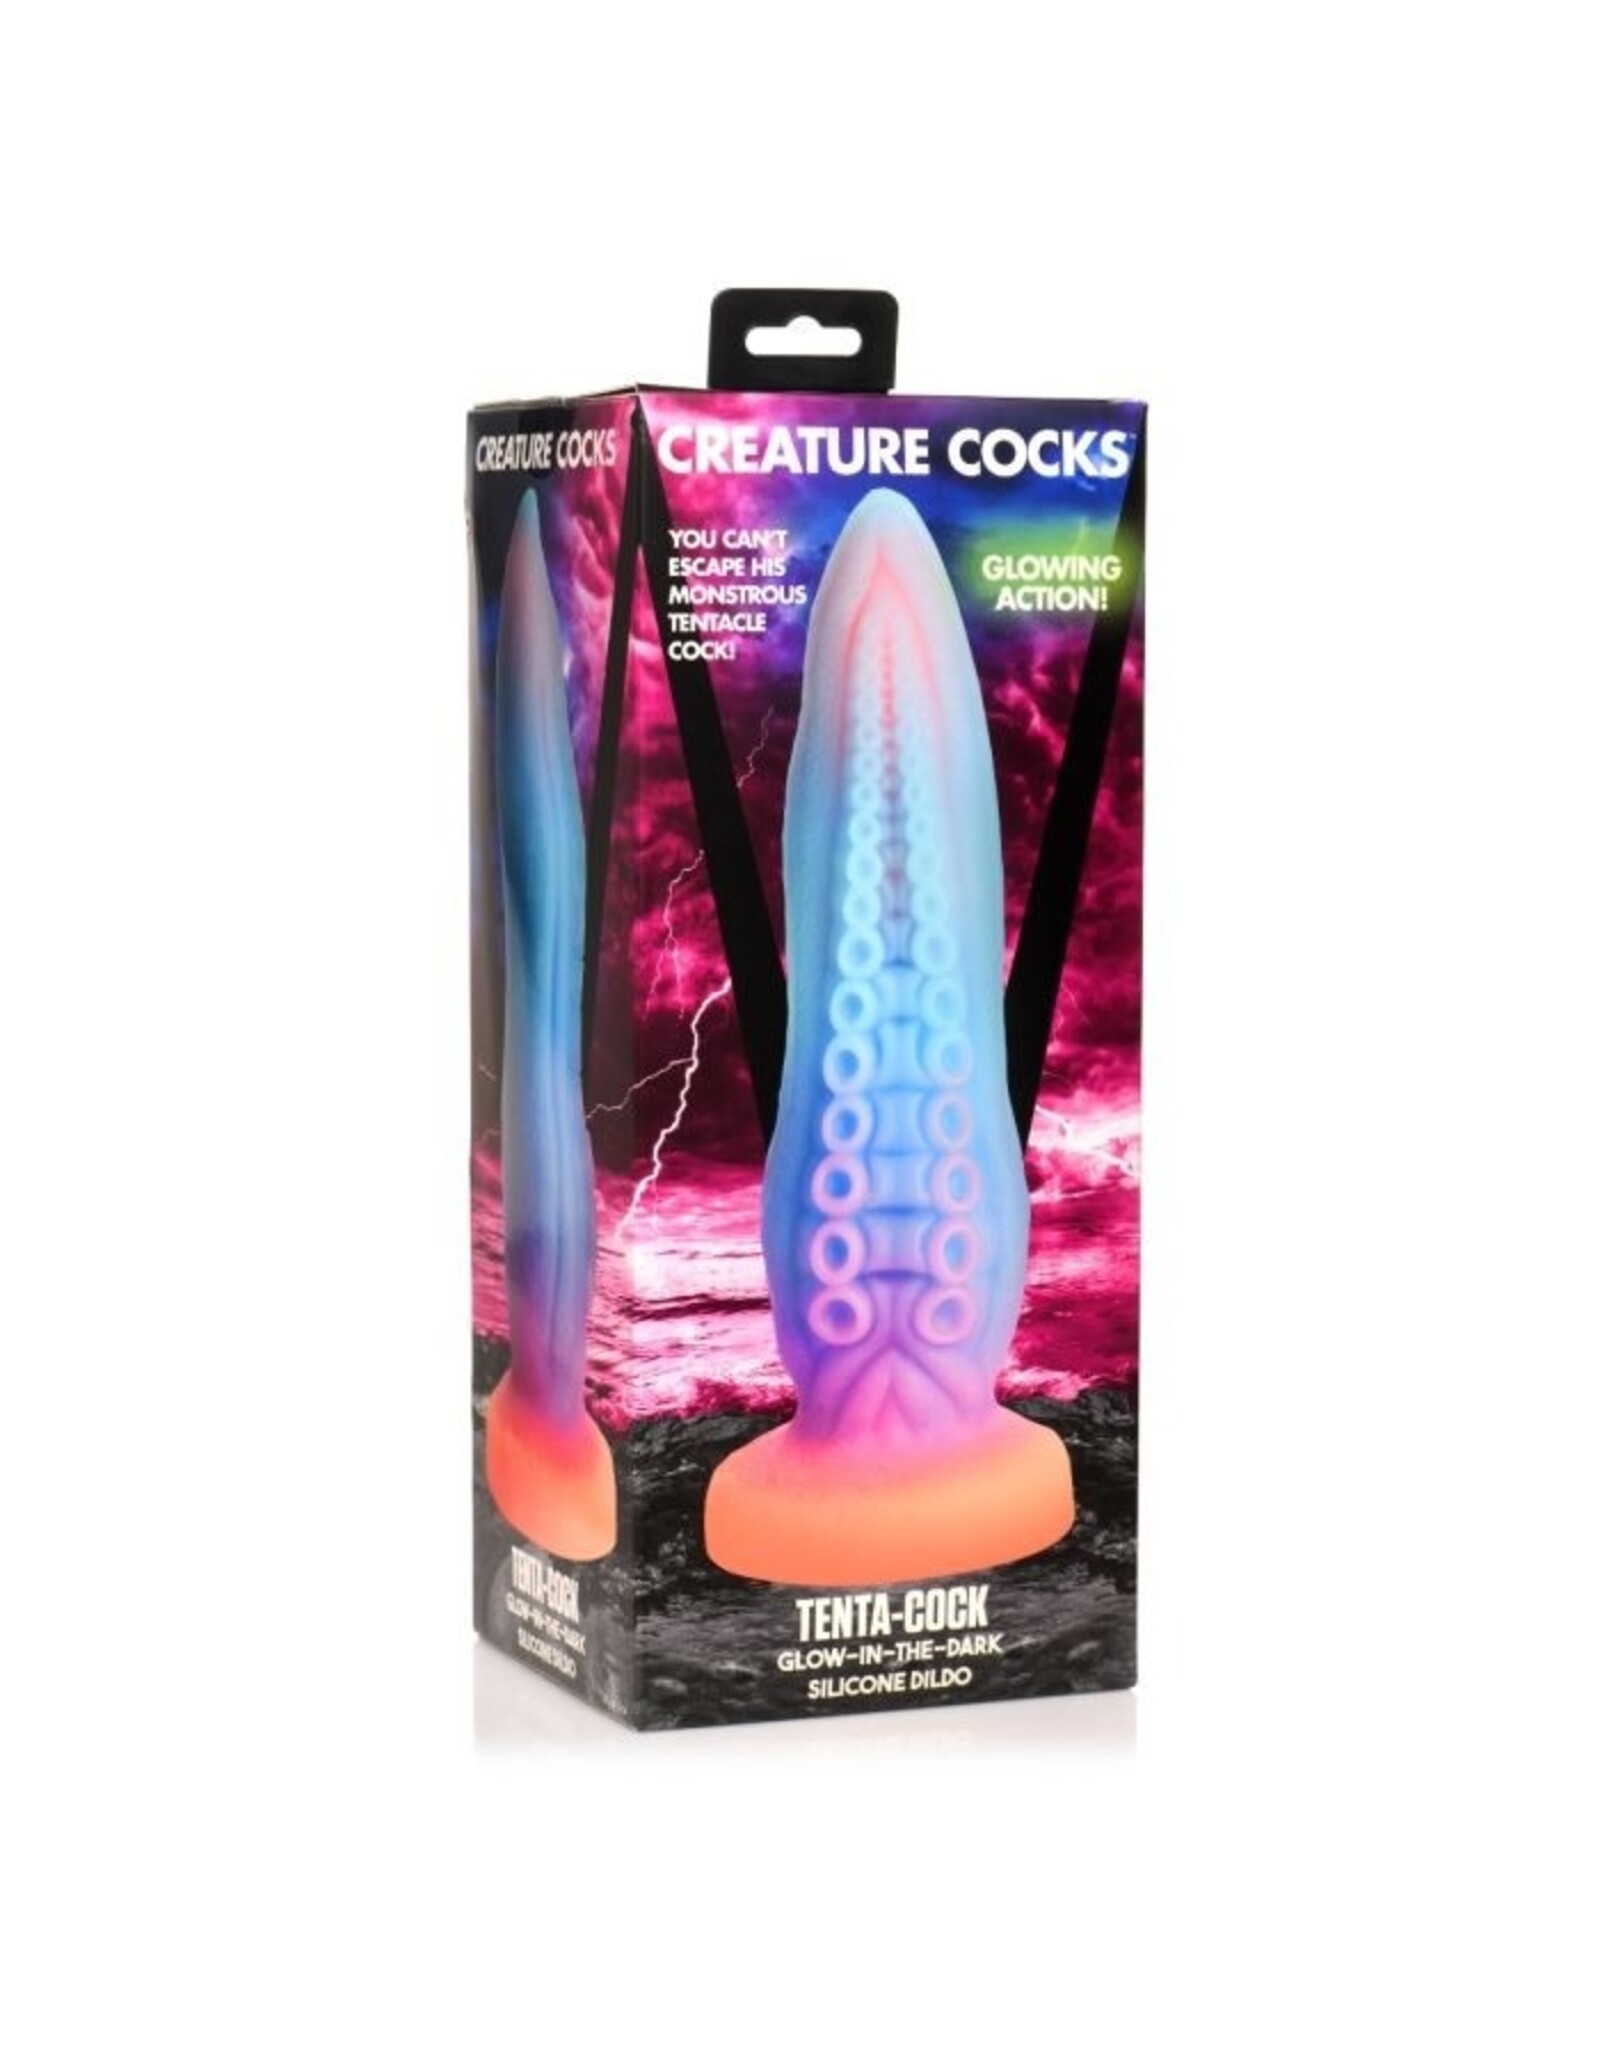 XR Brands Creature Cocks - Tenta-Cock Glow-in-the-Dark Silicone Dildo